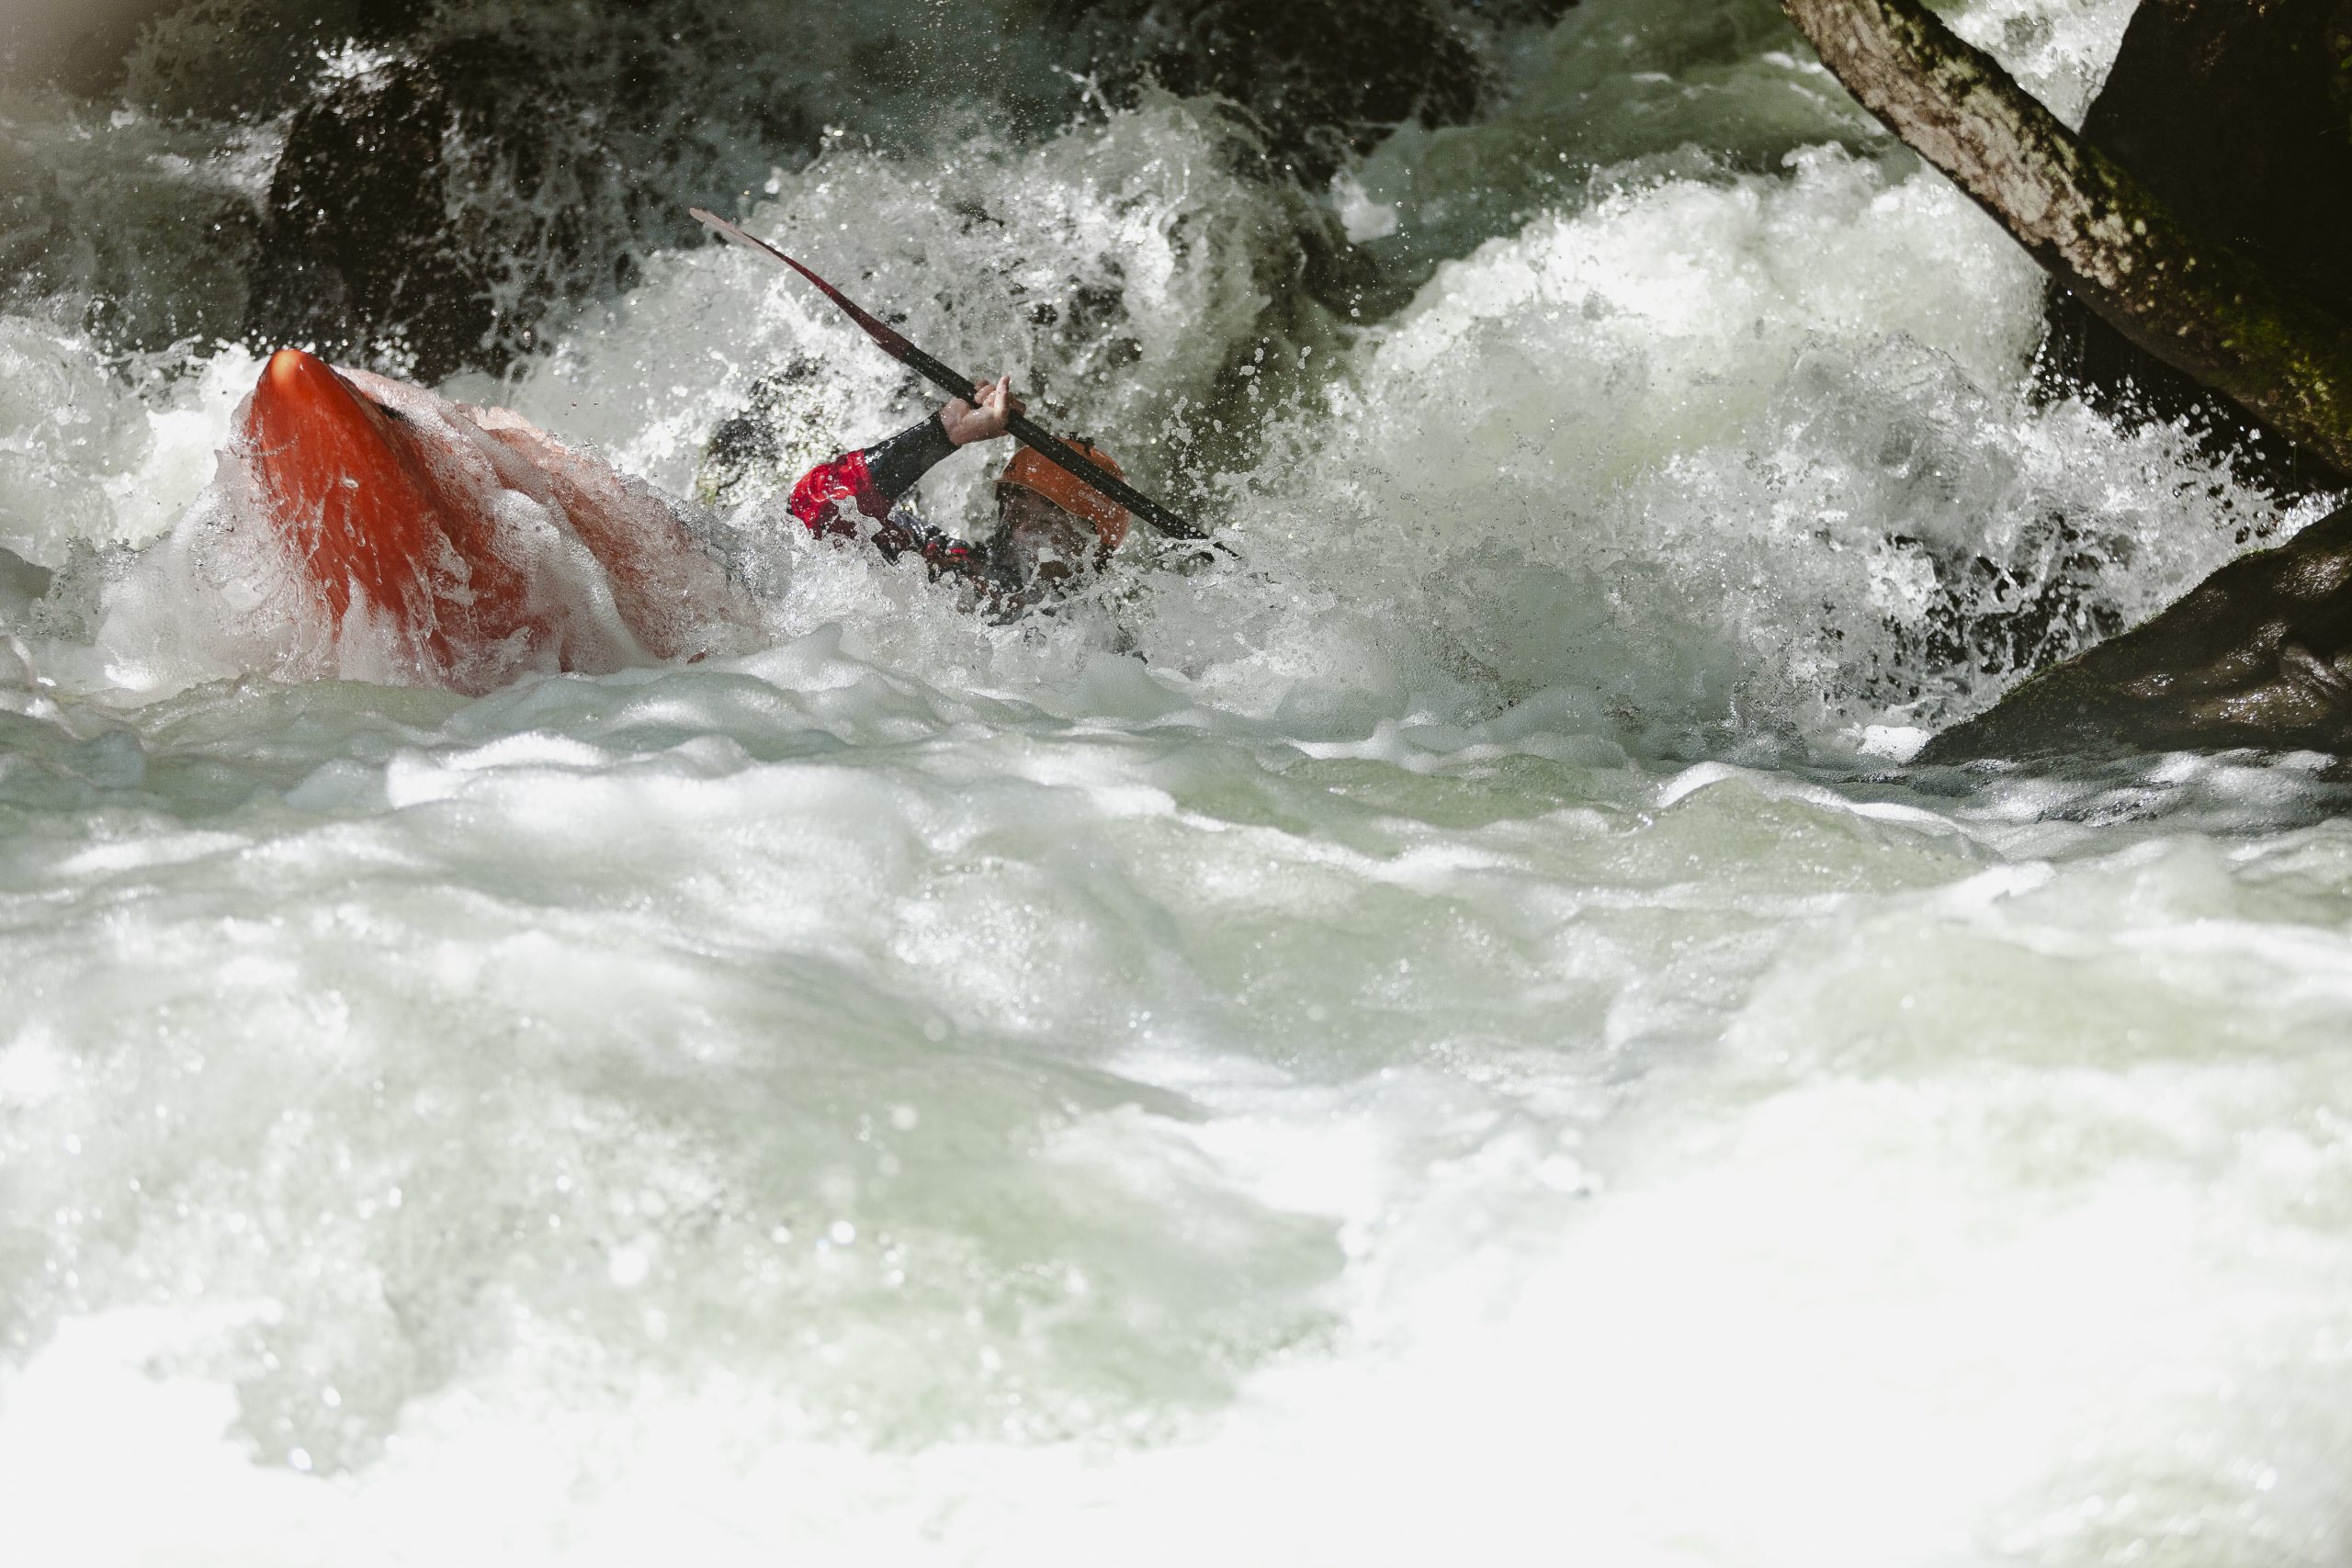 Saliendo de las Fuentes (Vº). Río Piqueras. Descenso en piragua. XX competición de Kayak extremo. 24 de julio de 2022.
© Juan San Sebastián. Todos los derechos reservados.